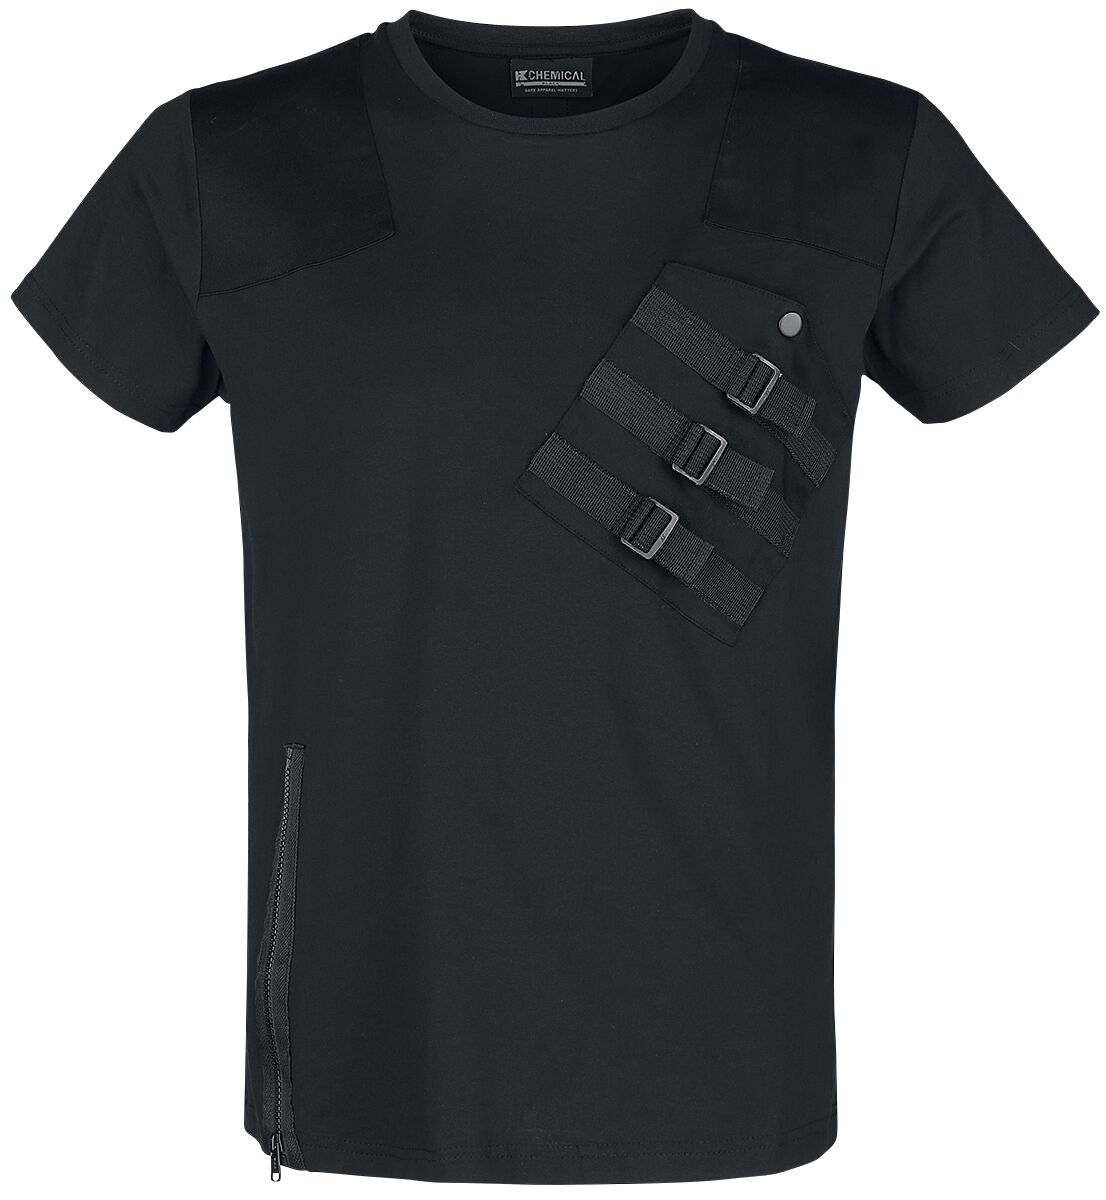 Chemical Black - Gothic T-Shirt - Cadet Top - S bis 3XL - für Männer - Größe XL - schwarz